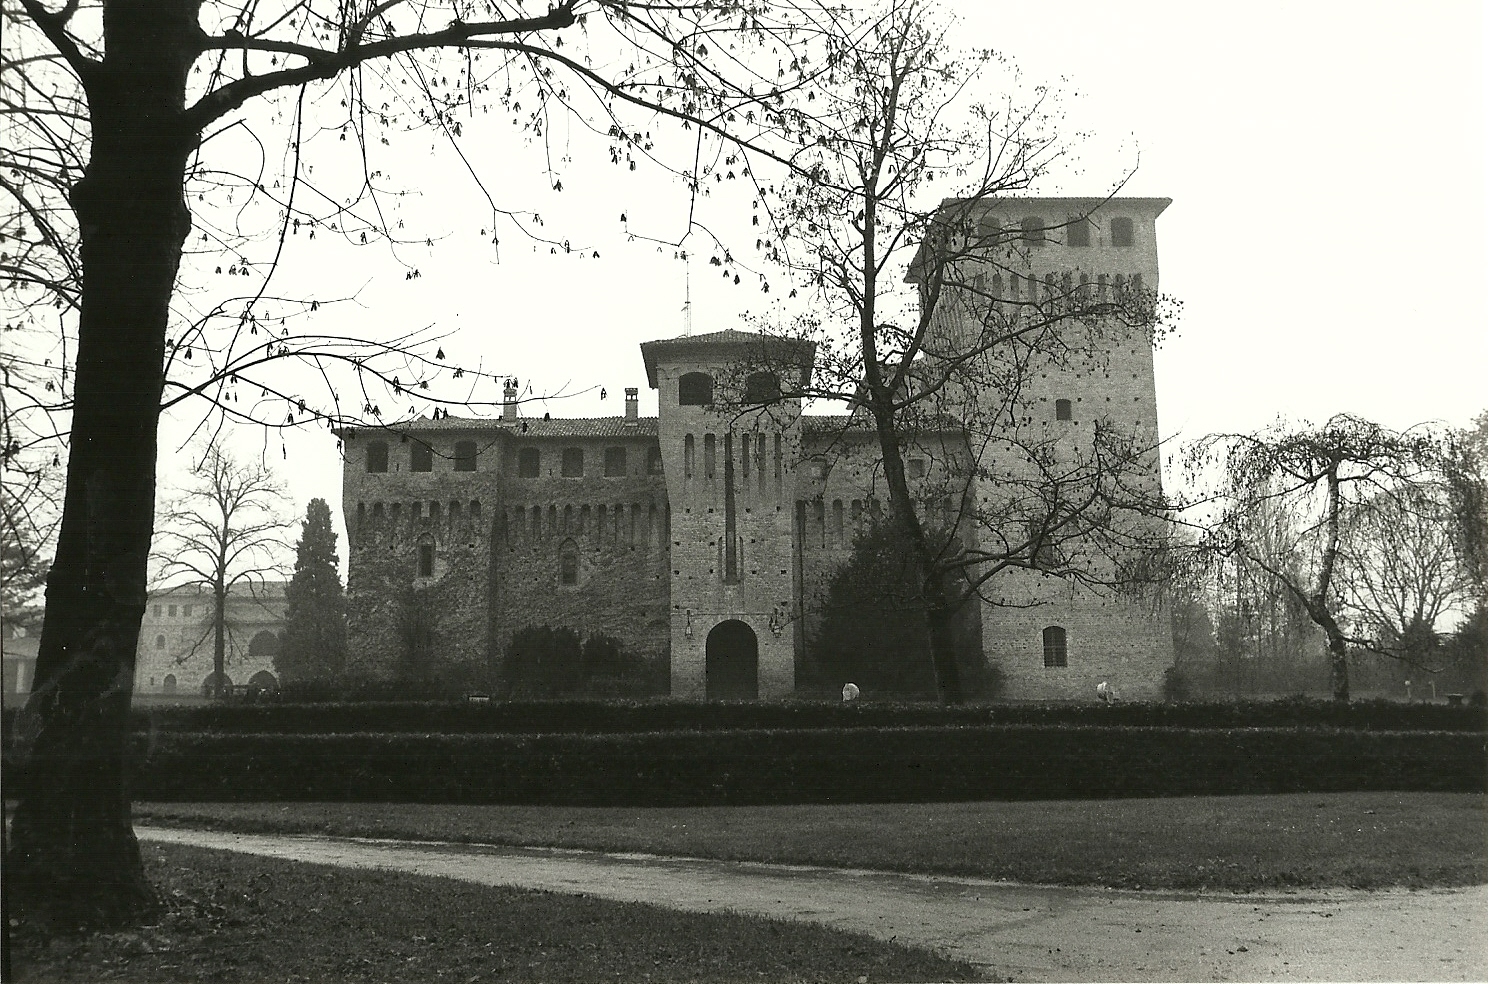 Castello di Castelguelfo (castello) - Noceto (PR) 